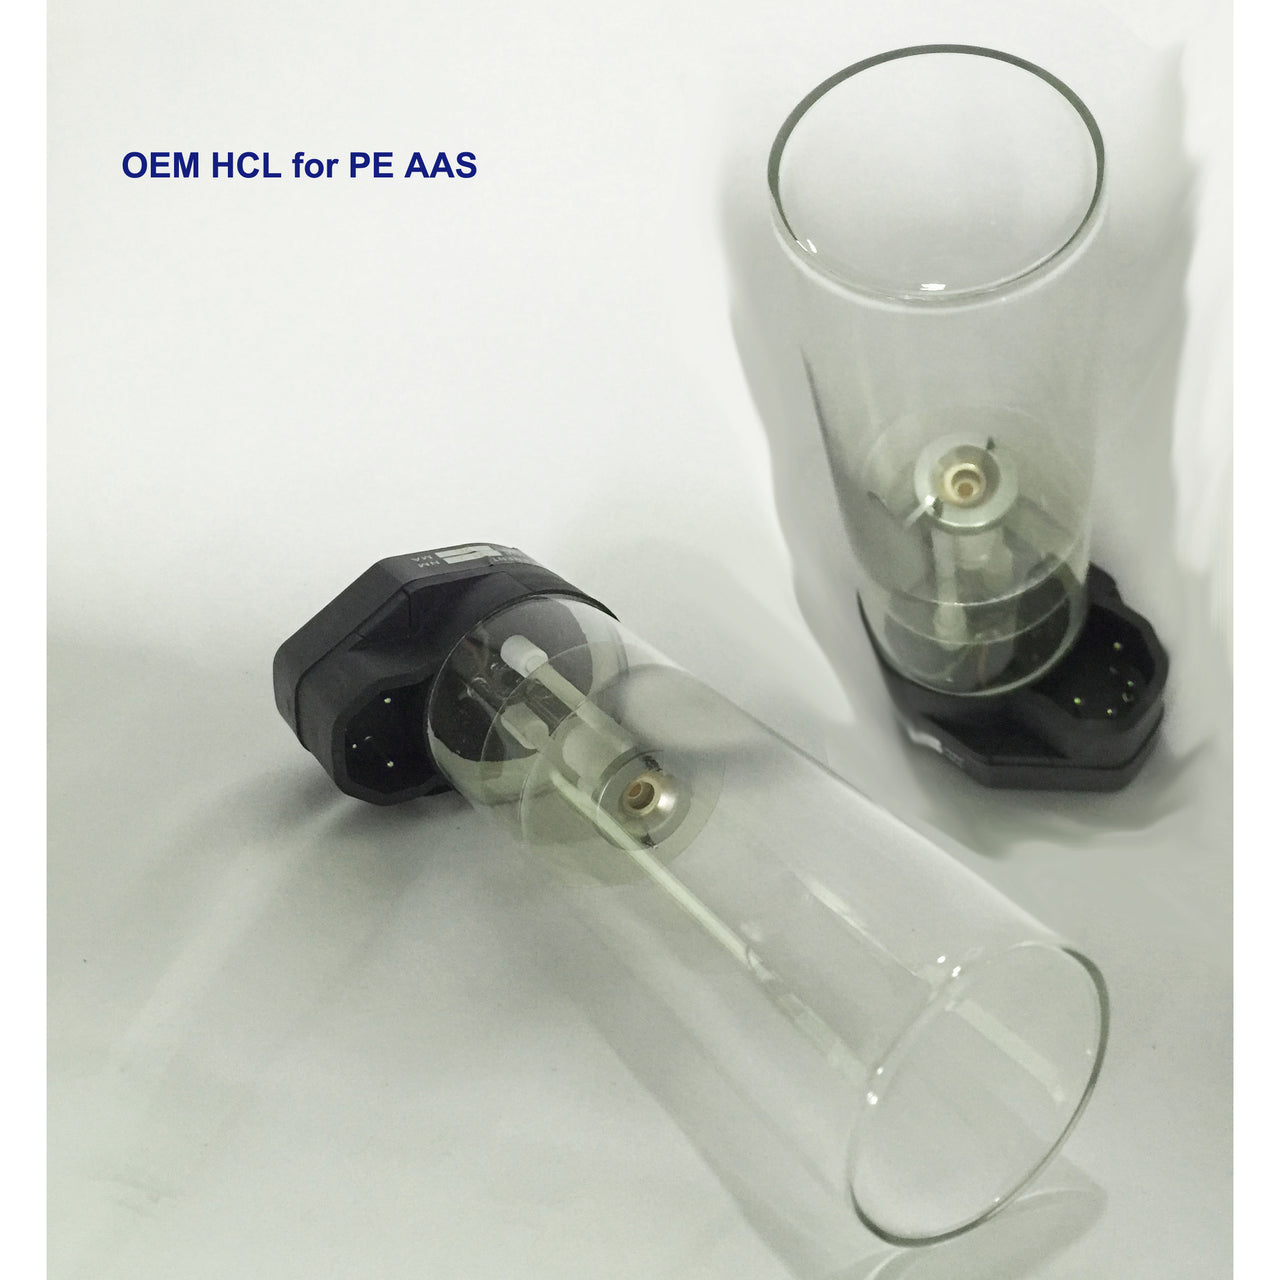 Hollow Cathode Lamp, Neodymium - Nd